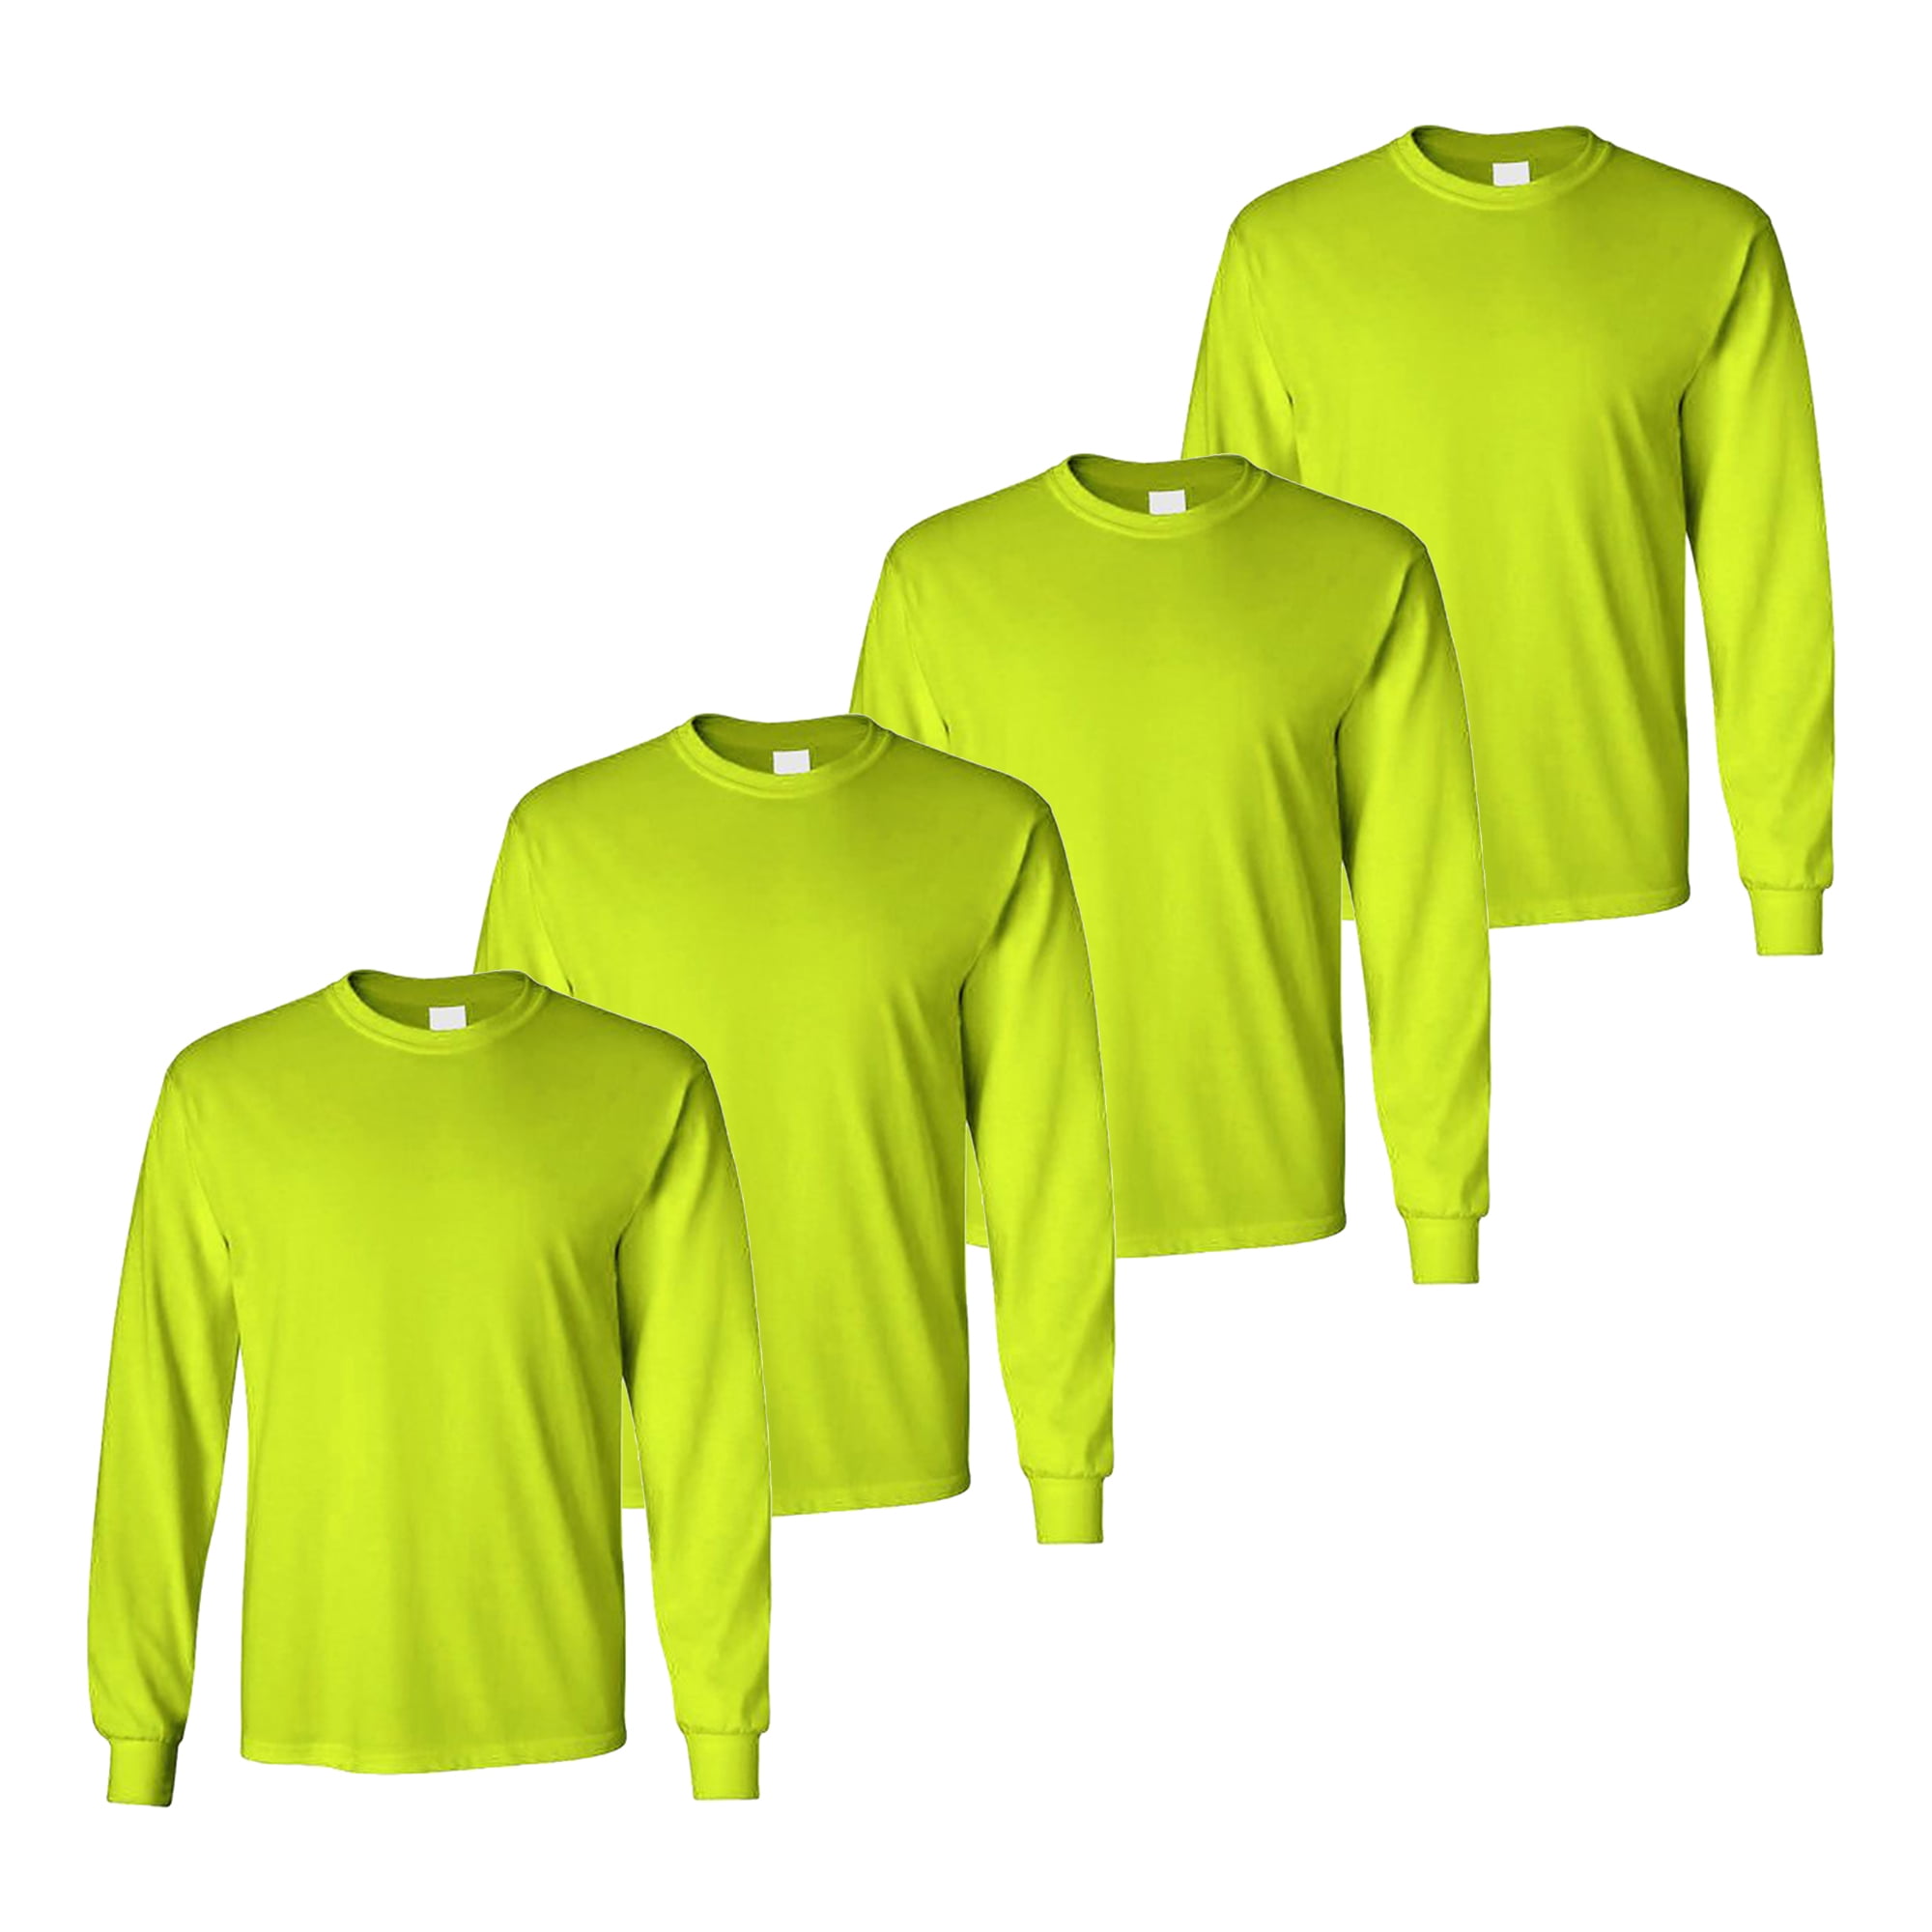 Long Sleeve Safety Green Construction T-Shirts for Men, Ropa de trabajo de  manga larga, Long Sleeve Safety Shirts - Work Shirts for Men - High Visible  Construction Tshirts. Radyan 4 Pack safety